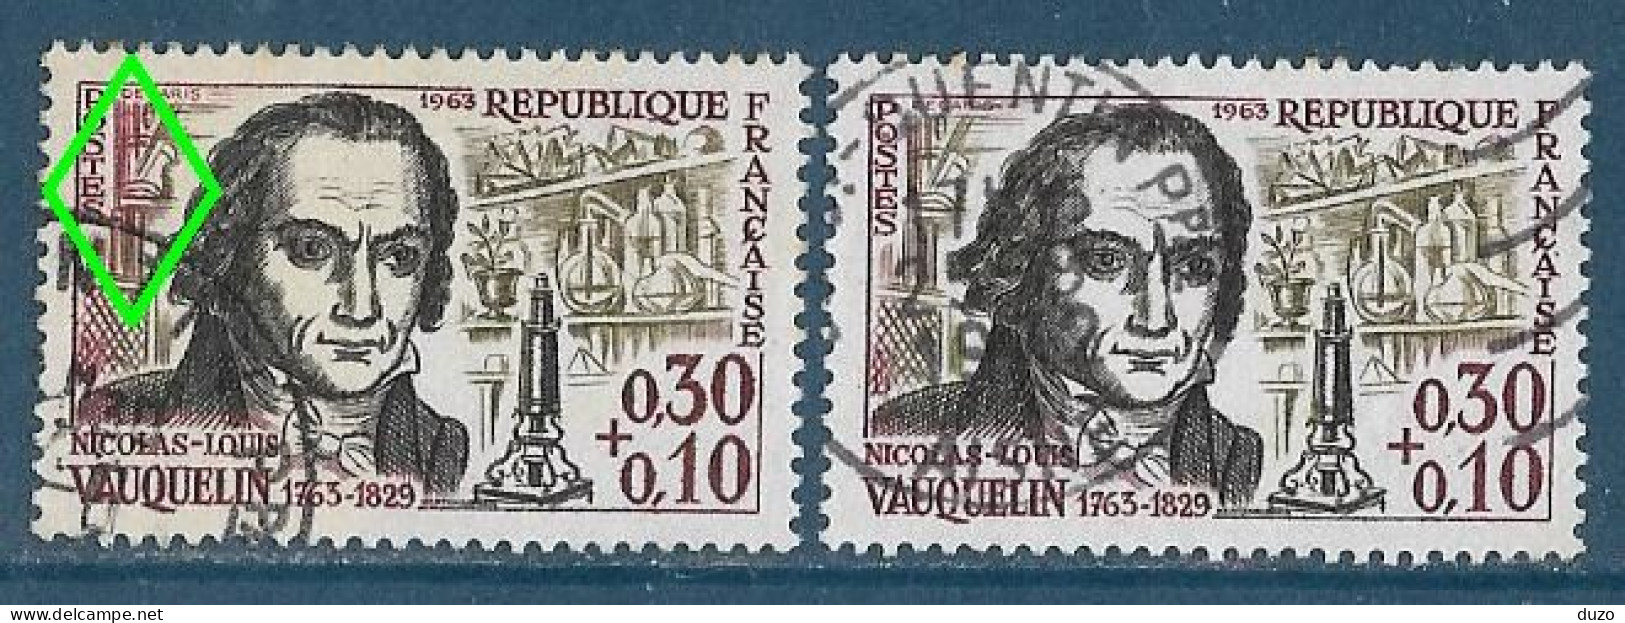 France 1963 - Variété - Y&T N° 1373 Vauquelin (oblit) - 1 Exemplaire Fond De Gauche En Rouge + 1 Normal Brun Olive. - Used Stamps